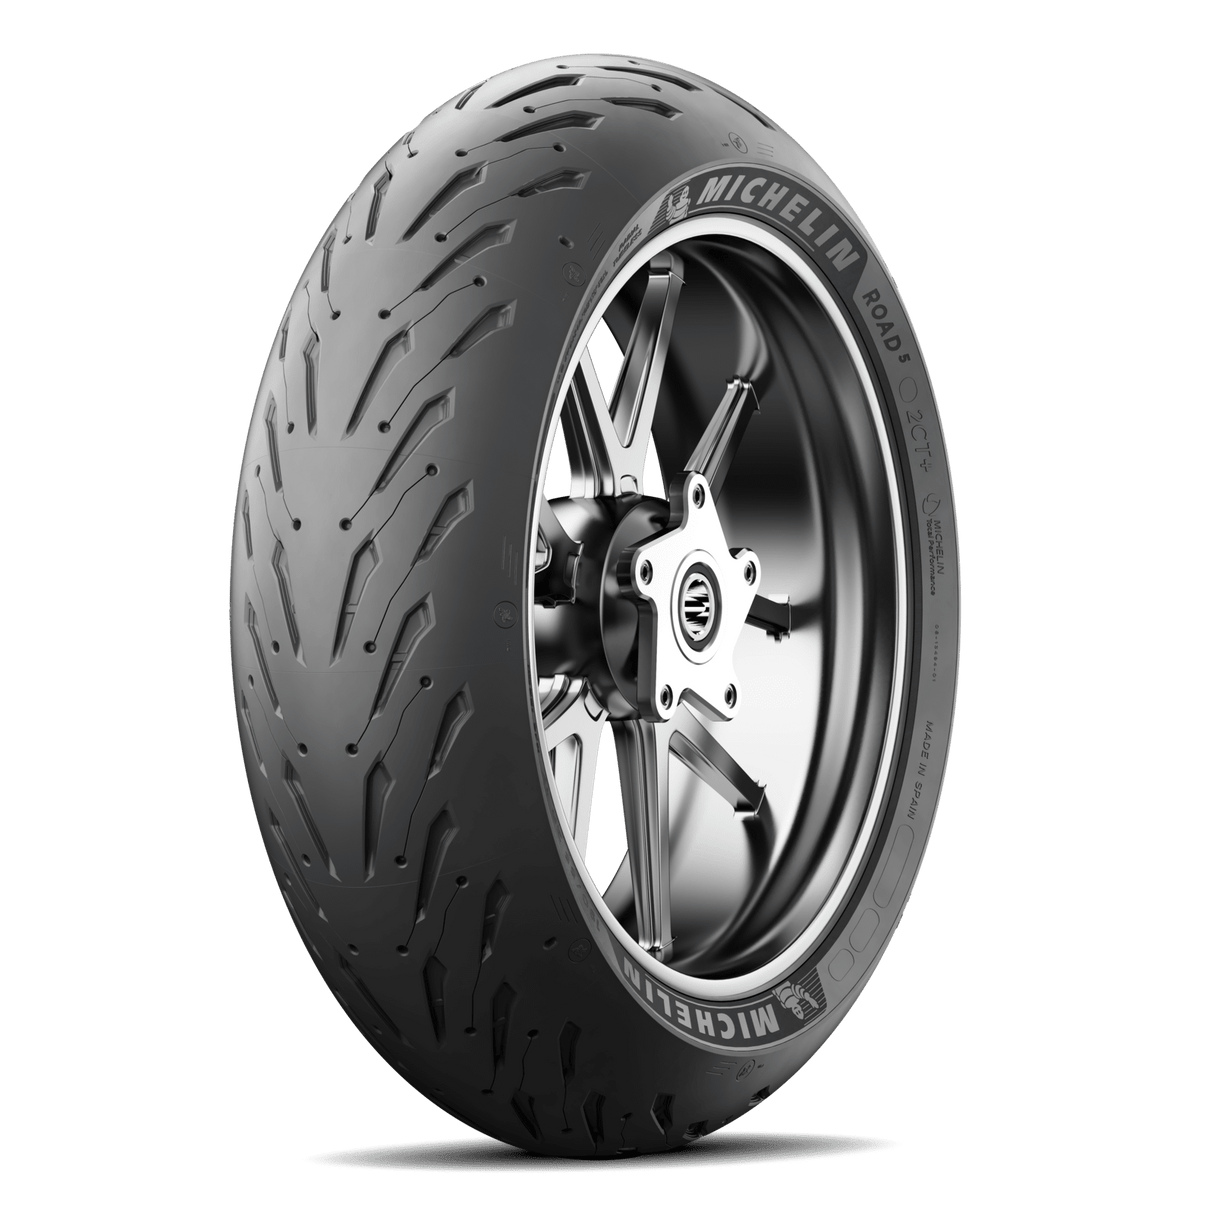 Michelin Road 5 190/55 ZR 17 (75W) Rear Tyre